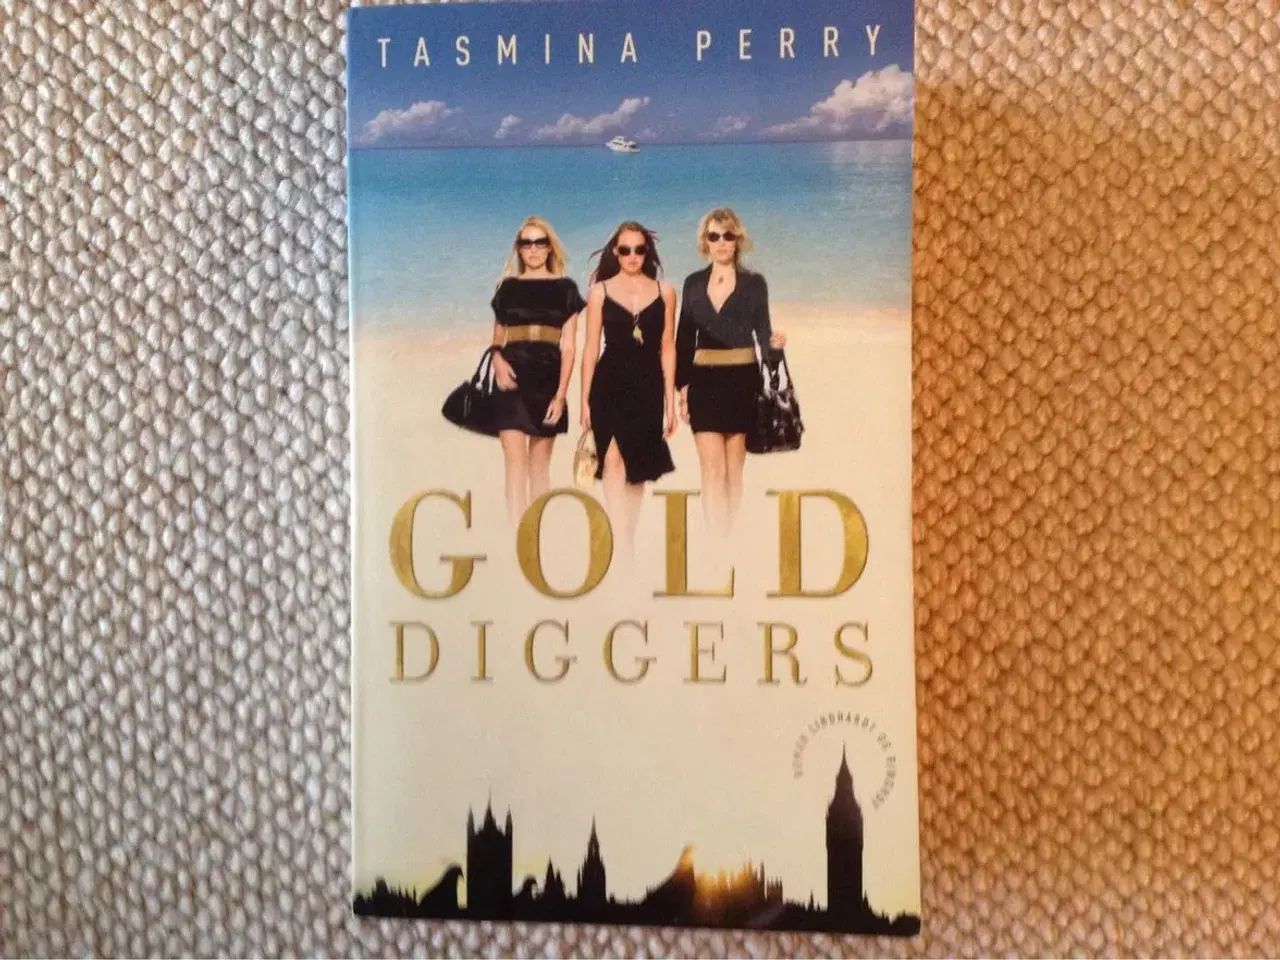 Billede 1 - Gold diggers" af Tasmina Perry